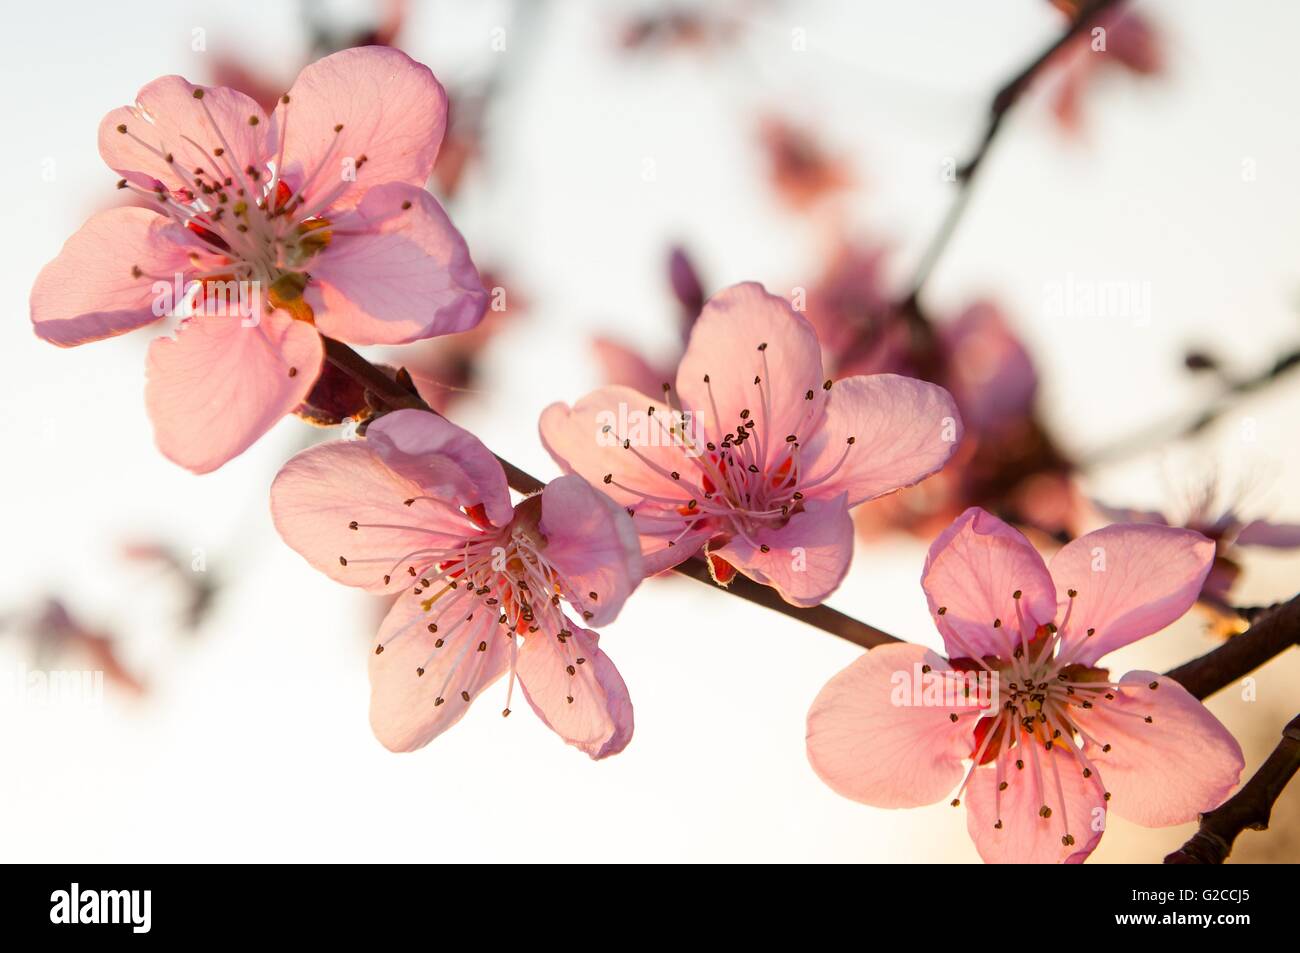 Branche de l'arbre d'abricot avec des fleurs roses au printemps. Contre ciel blanc Banque D'Images